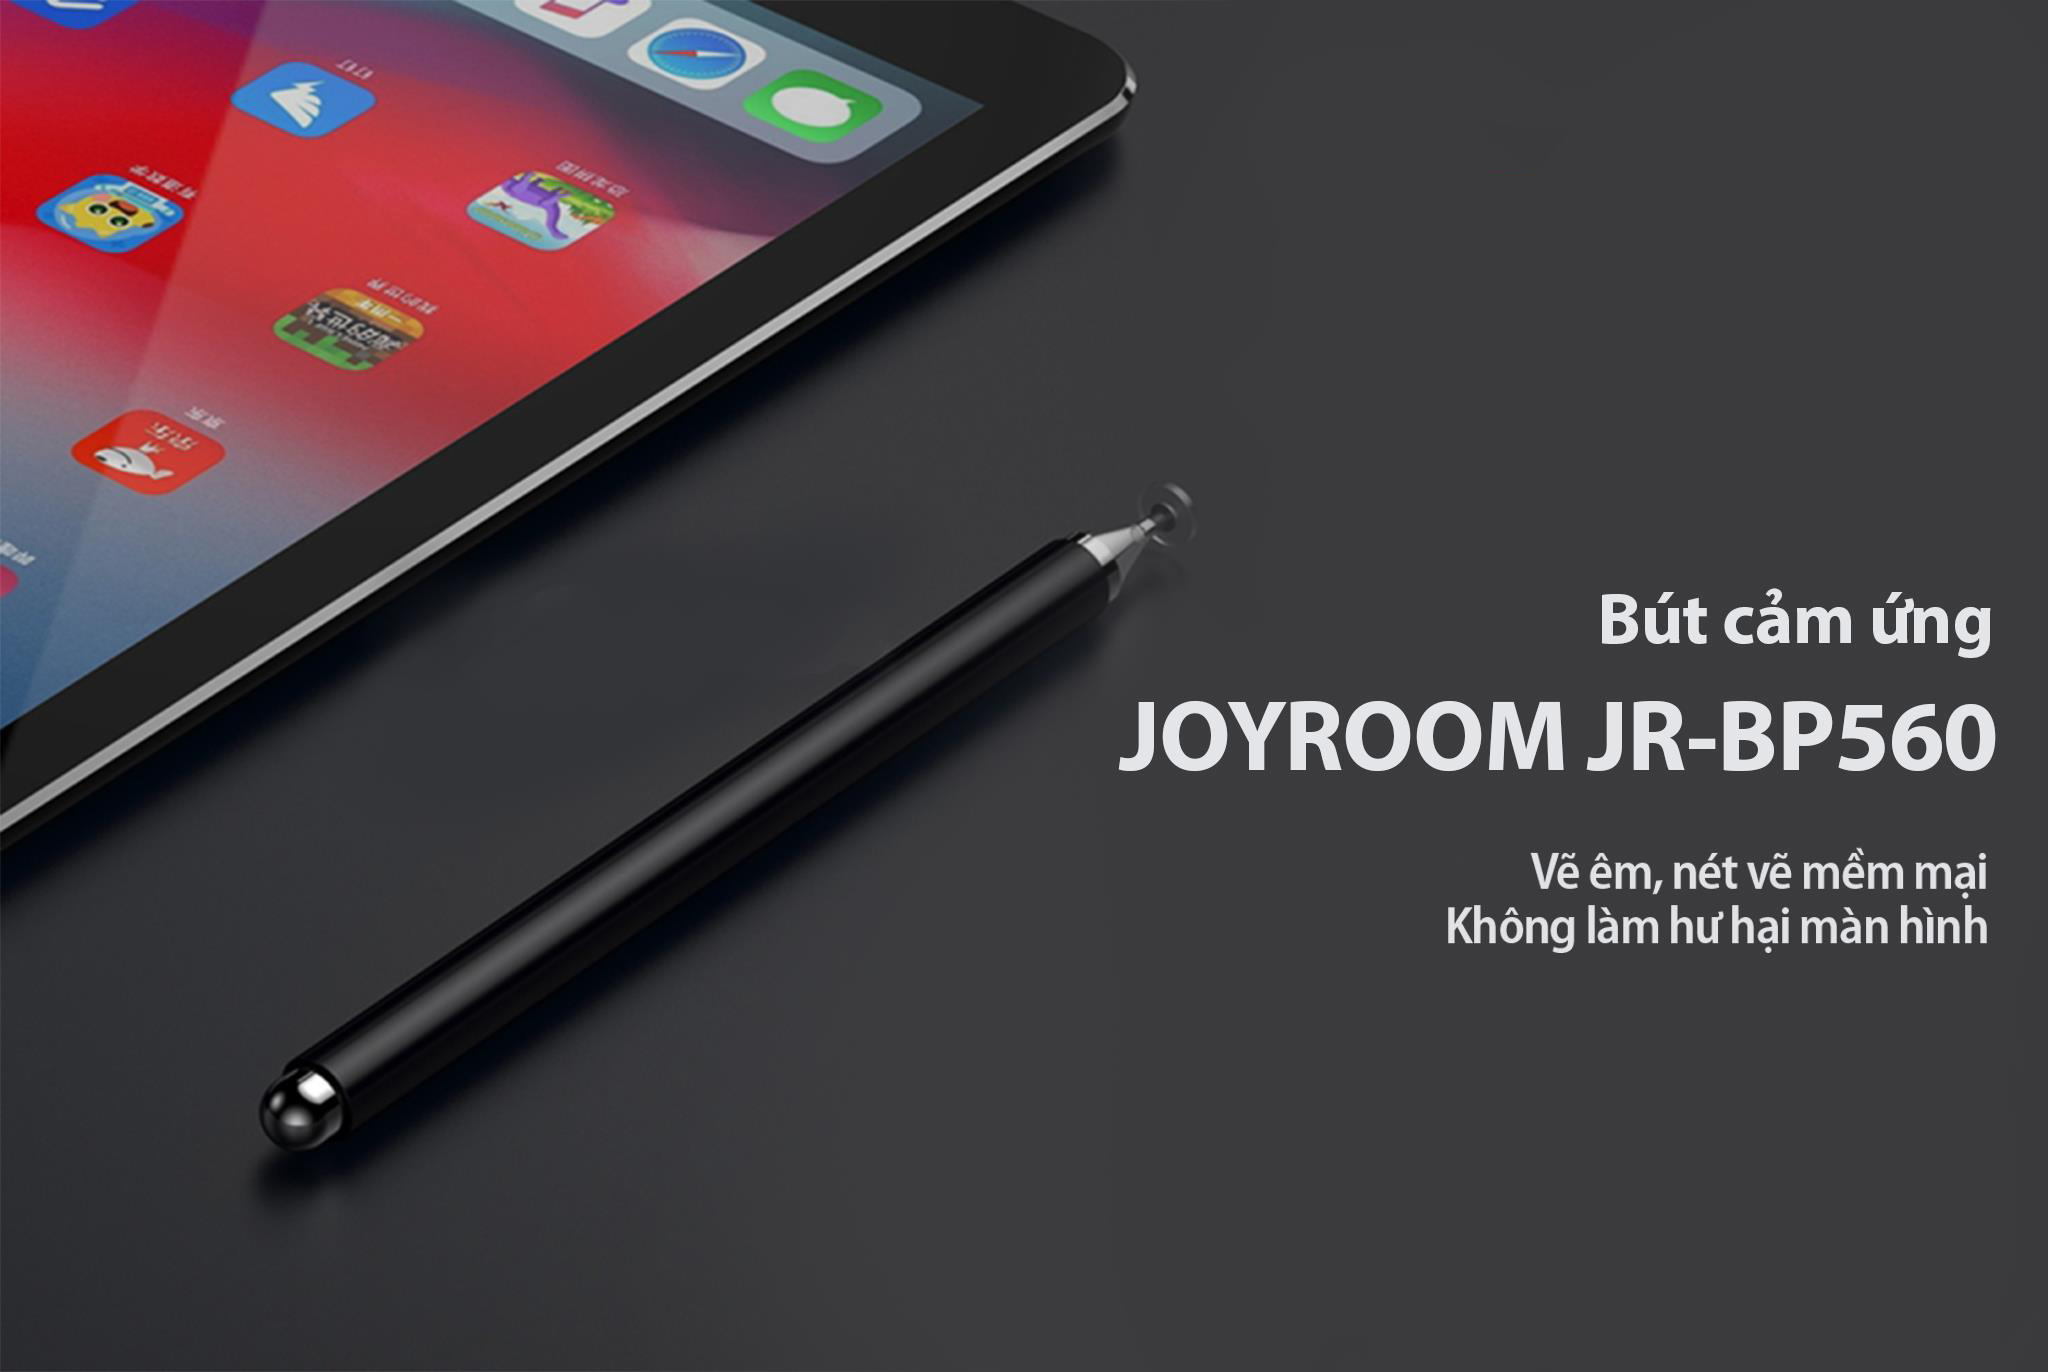 Bút cảm ứng Joyroom JR-BP560 (Màu ngẫu nhiên) - Hàng Chính Hãng